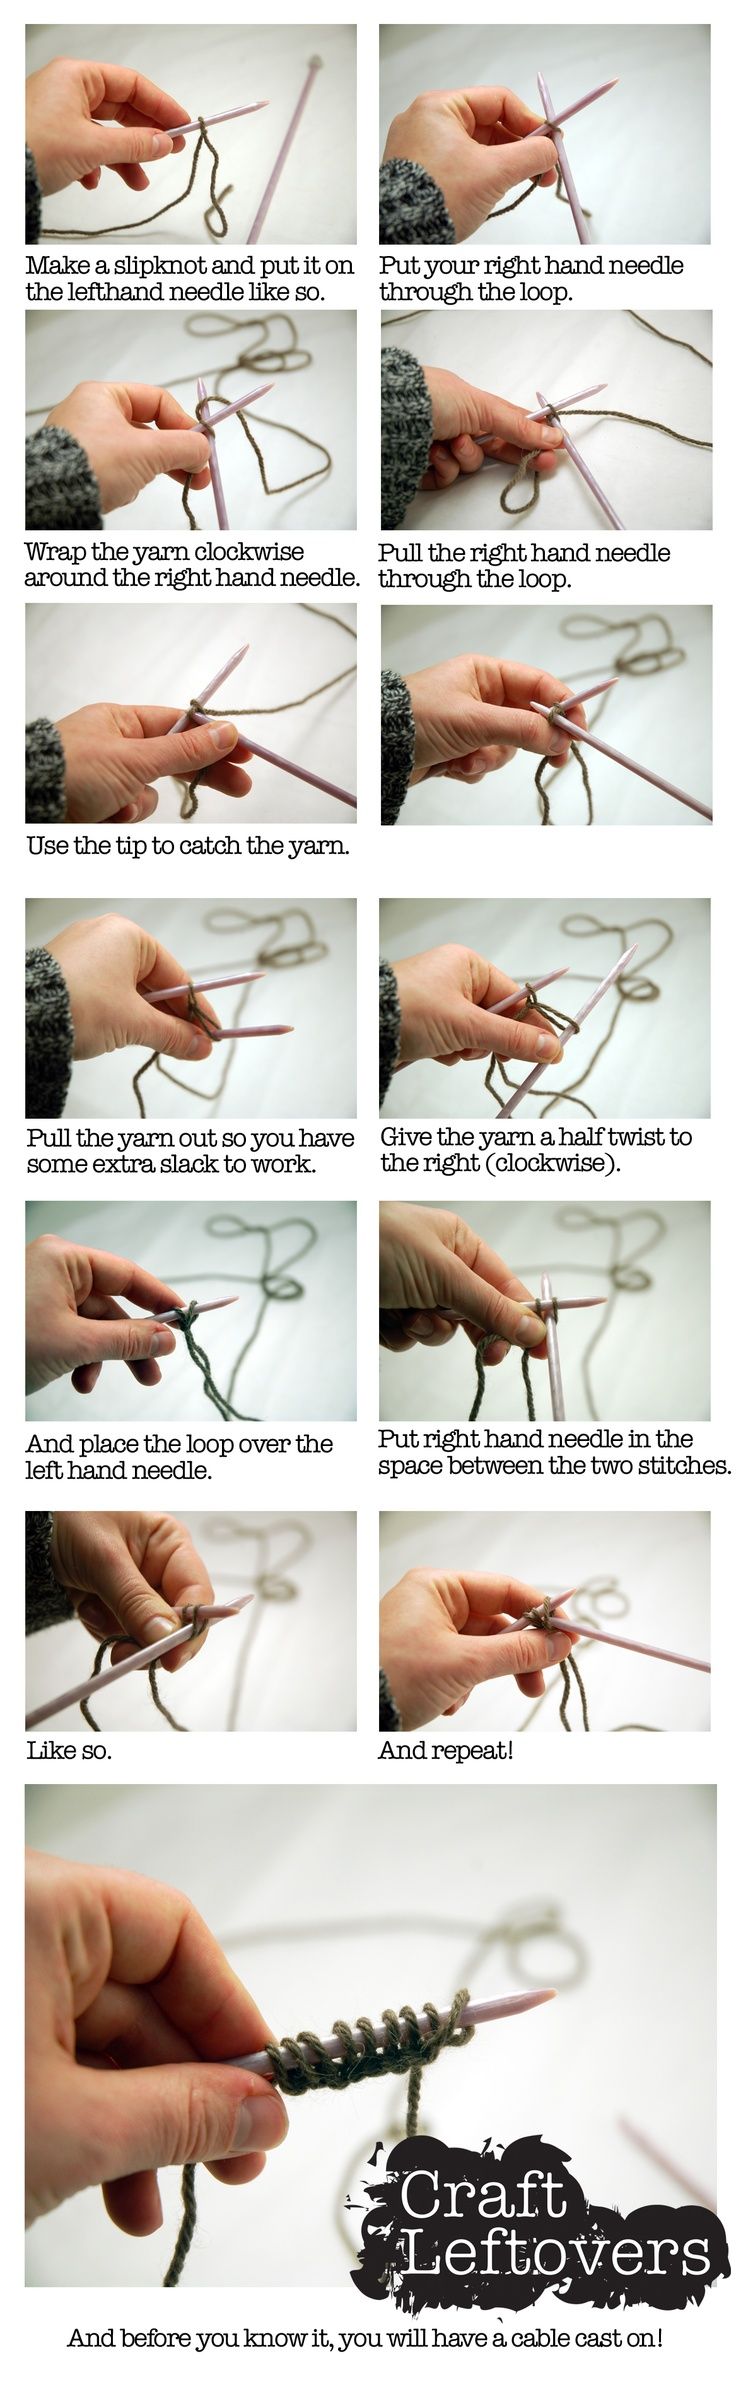 Basic knitting instructions casting on